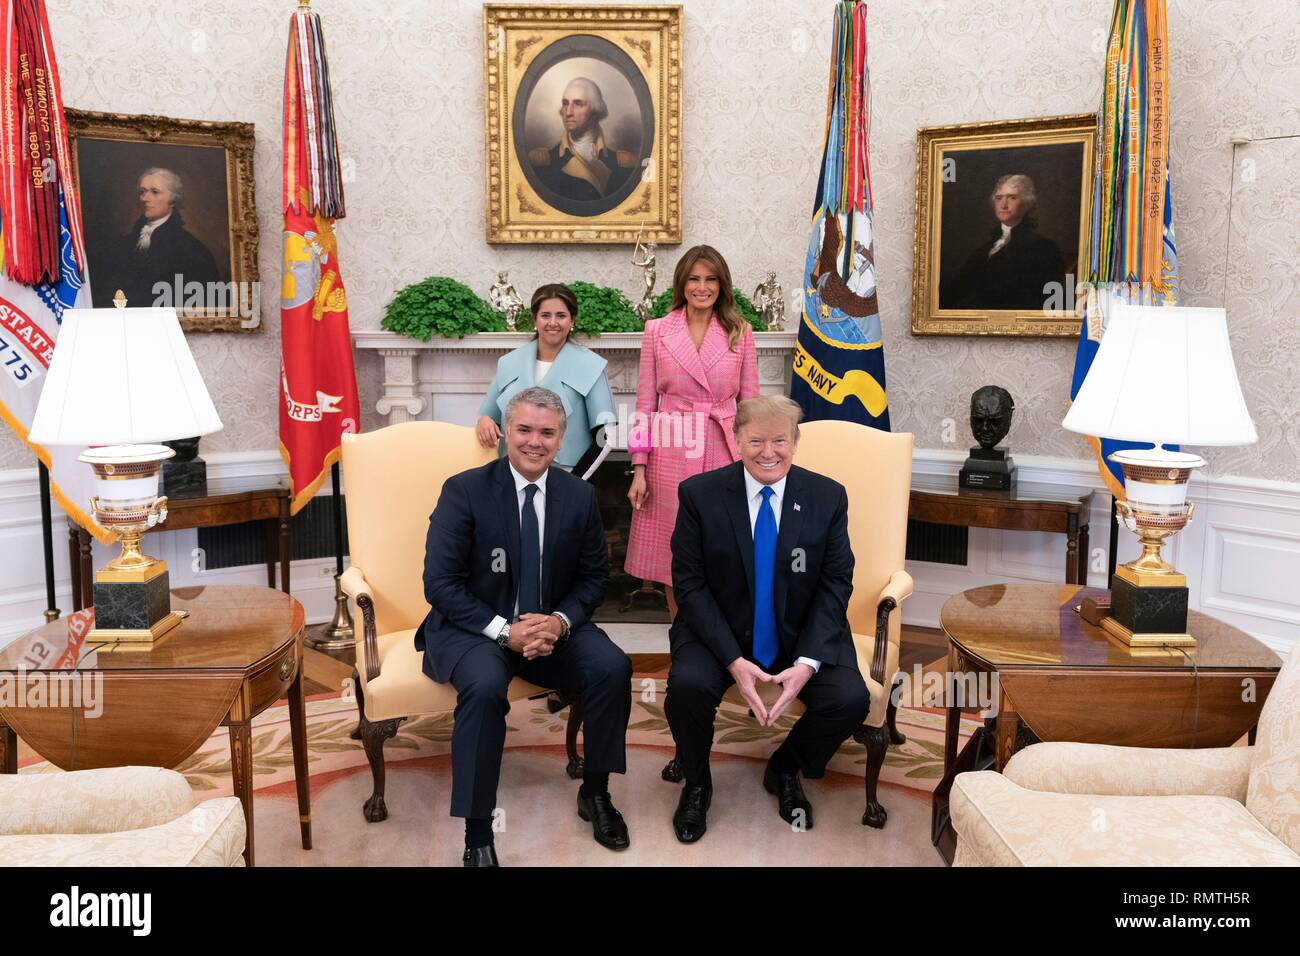 Us-Präsident Donald Trump und First Lady Melania Trump pose mit der kolumbianische Präsident Ivan Duque Marquez und seine Frau Maria Juliana Ruiz im Oval Office des Weißen Hauses Februar 13, 2019 in Washington, DC. Stockfoto